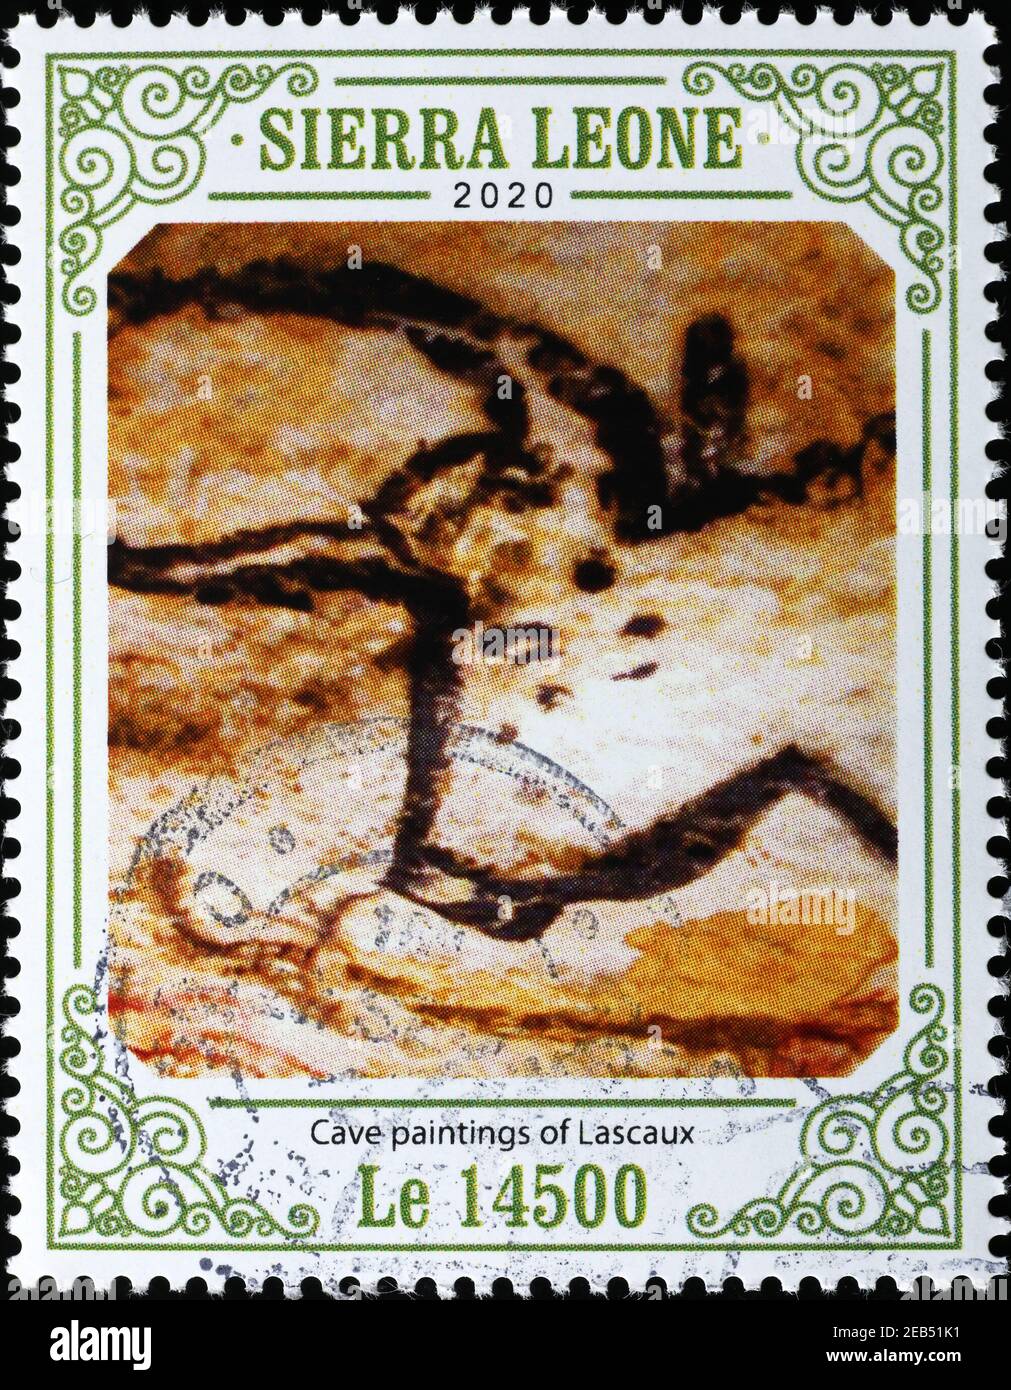 Aurochs dans des peintures rupestres de Lascaux sur timbre-poste Banque D'Images